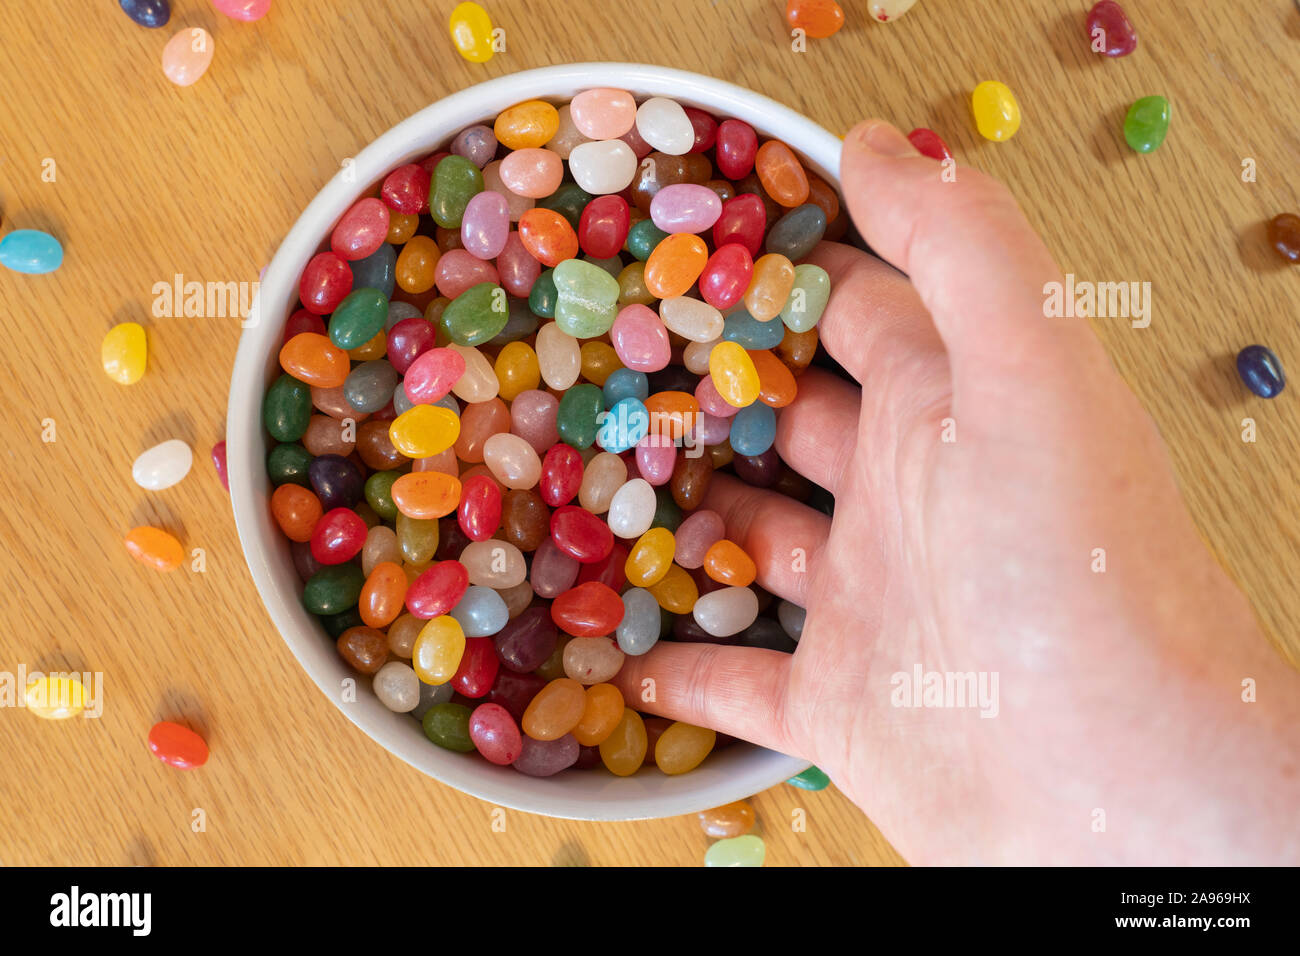 Un uomo adulto la mano scooping Jelly Beans in una ciotola piena di jellybeans. Concetto, la dipendenza da dolci, innamorate, candy, i piaceri della vita Foto Stock